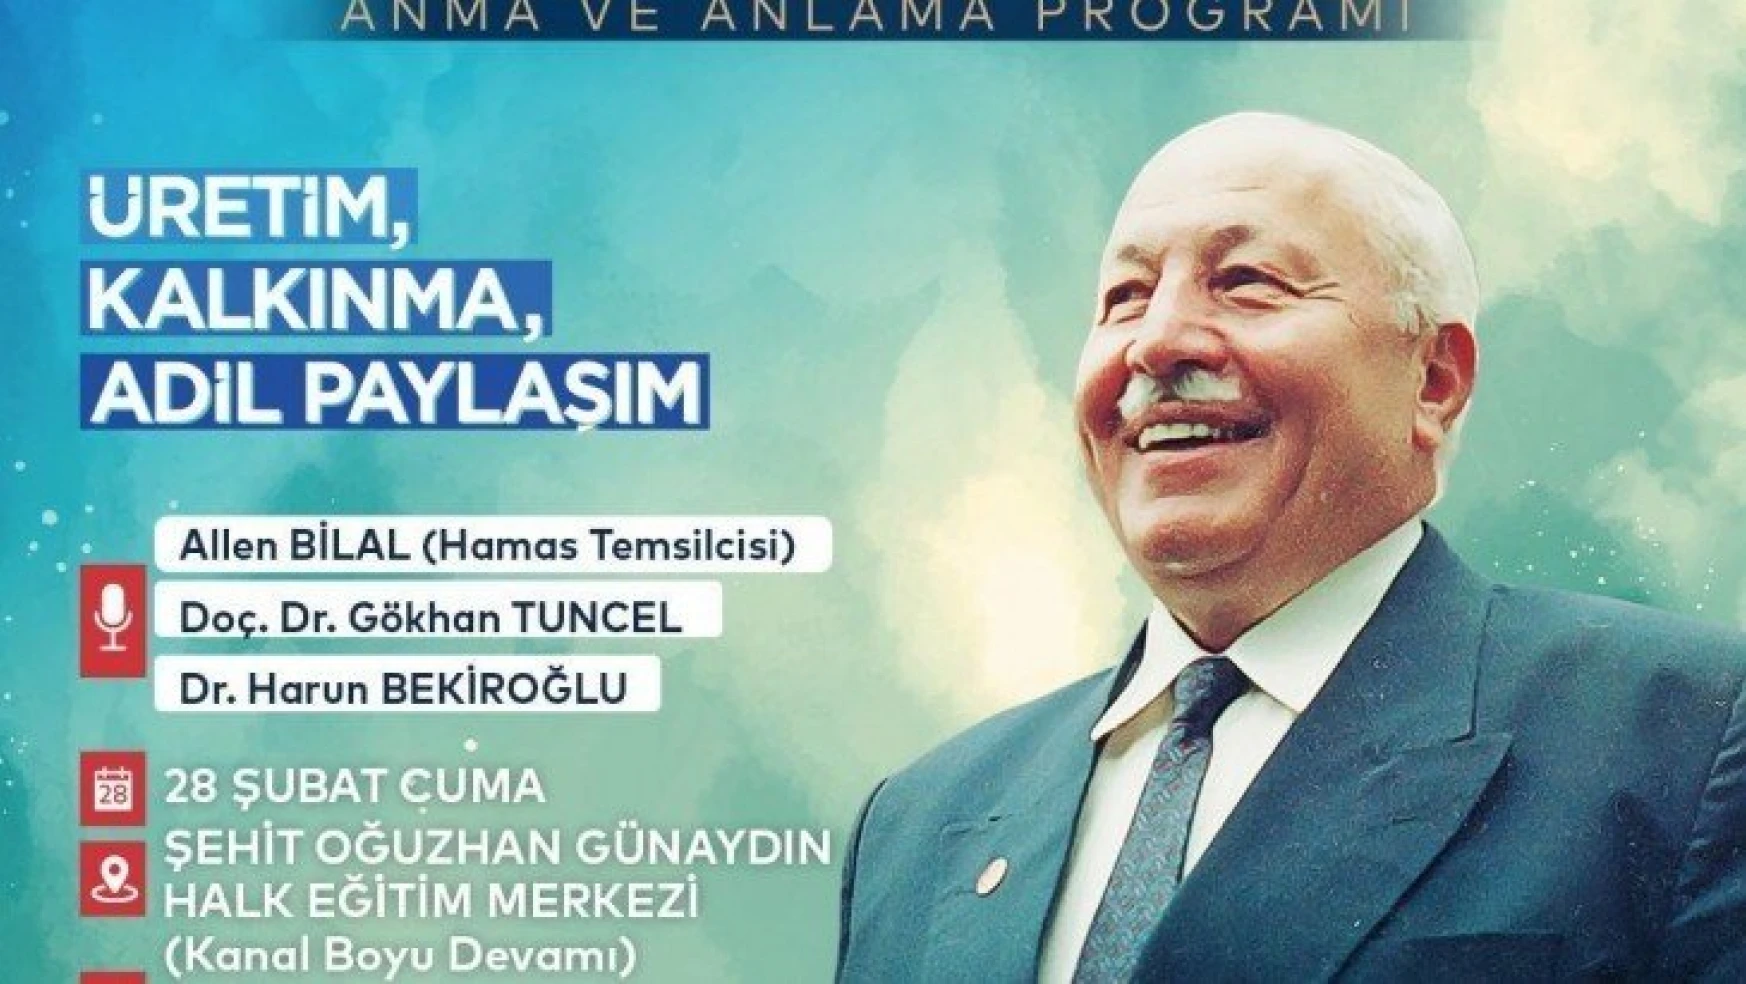 Anadolu Gençlik Derneği Malatya Şube Başkanlığı Erbakanı konferansla anacak